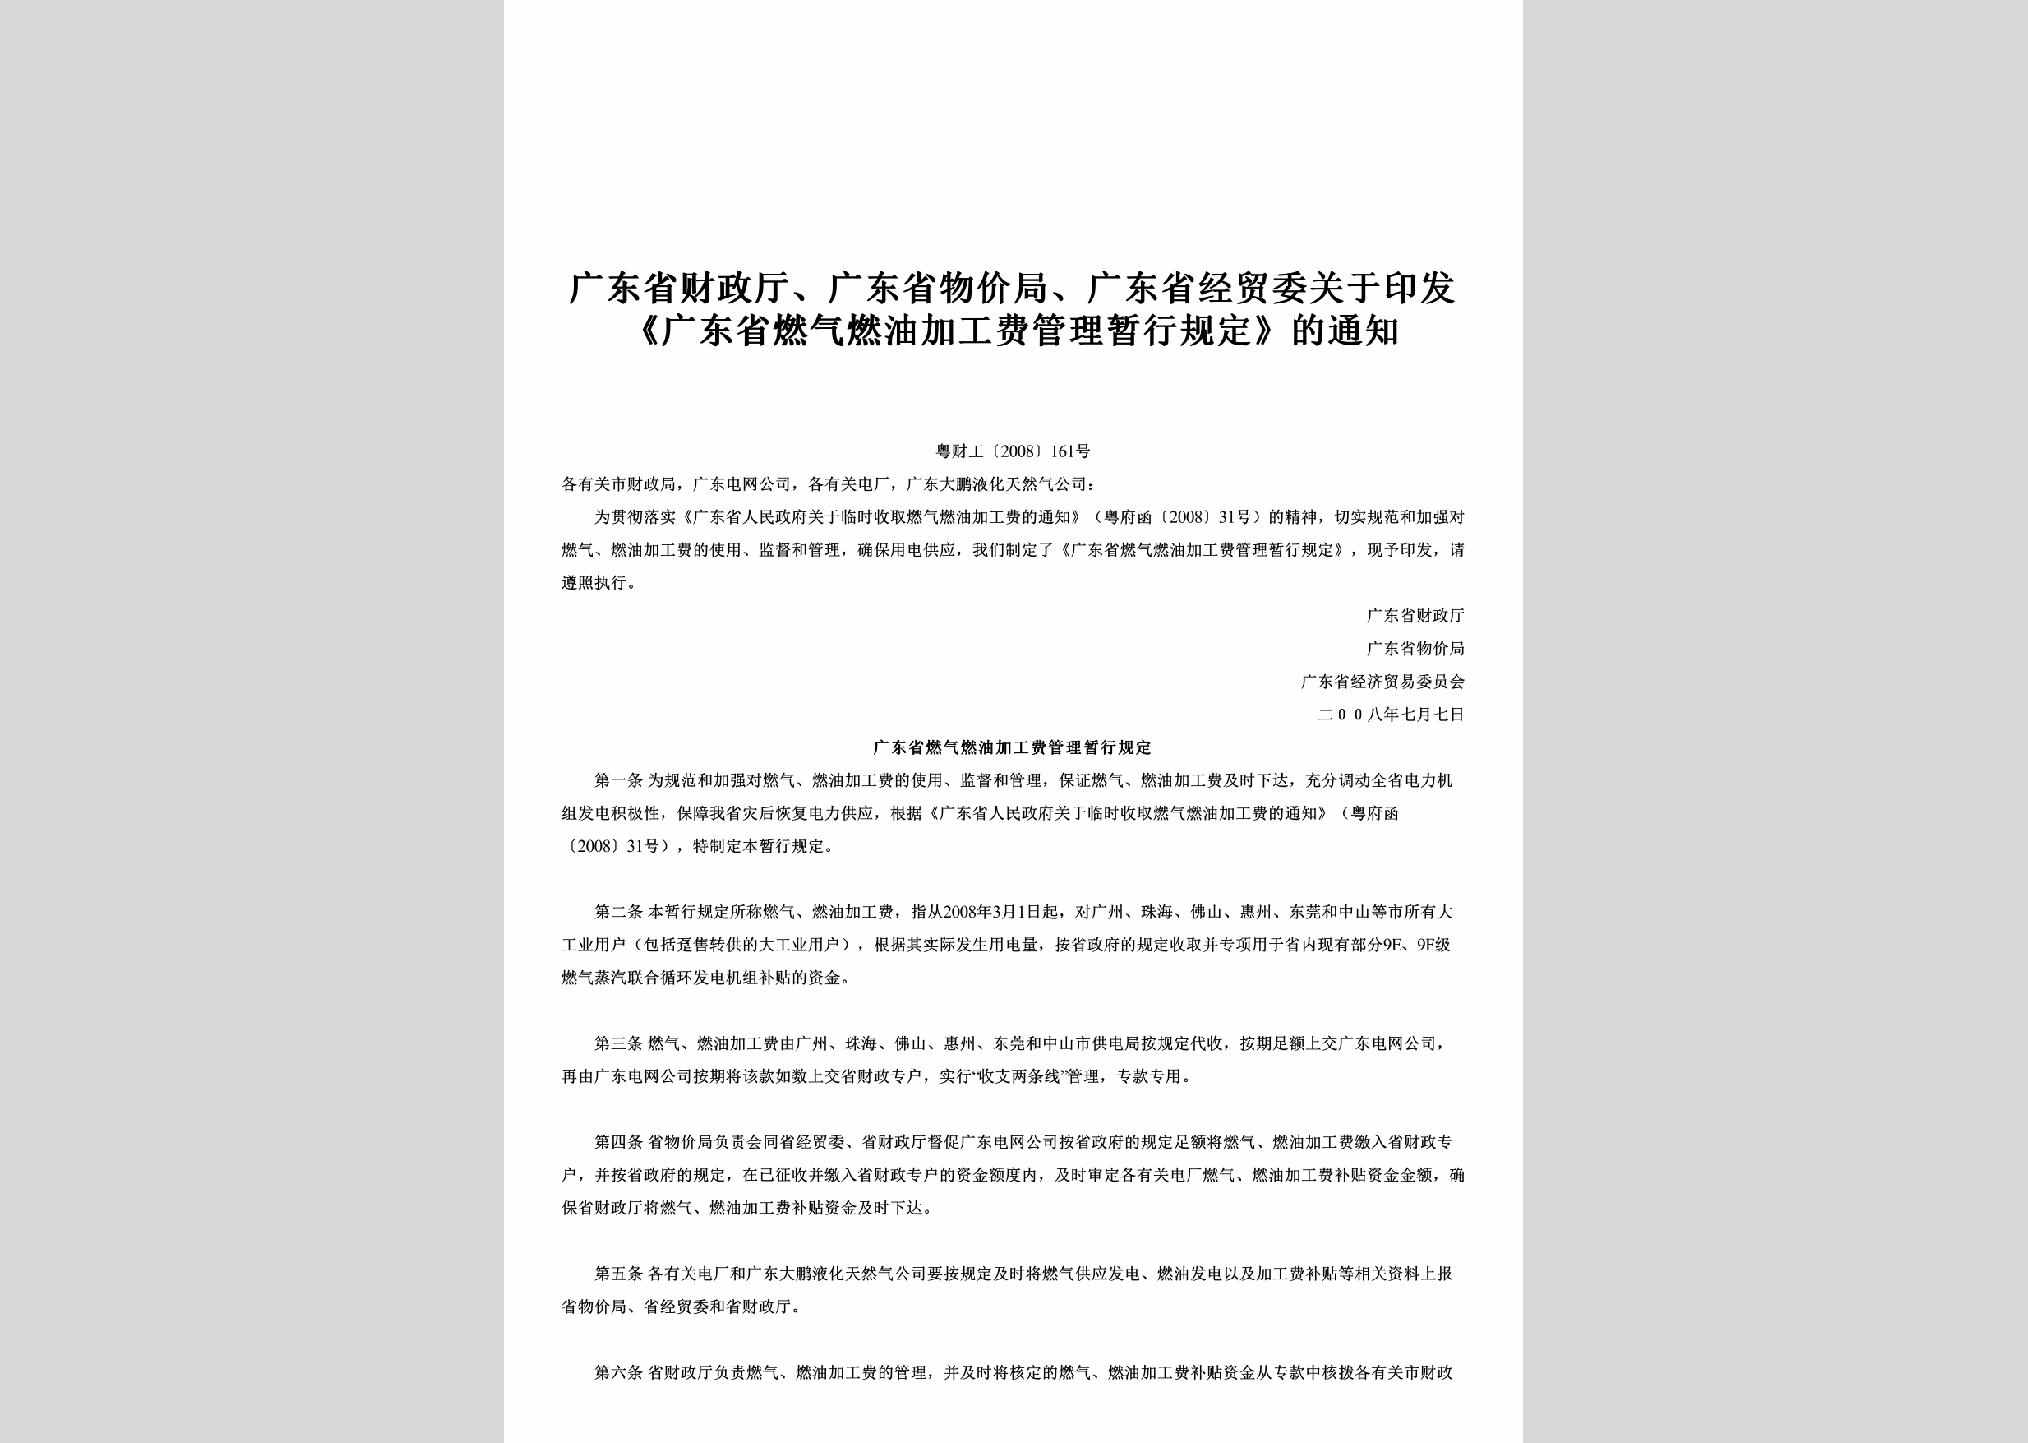 粤财工[2008]161号：关于印发《广东省燃气燃油加工费管理暂行规定》的通知